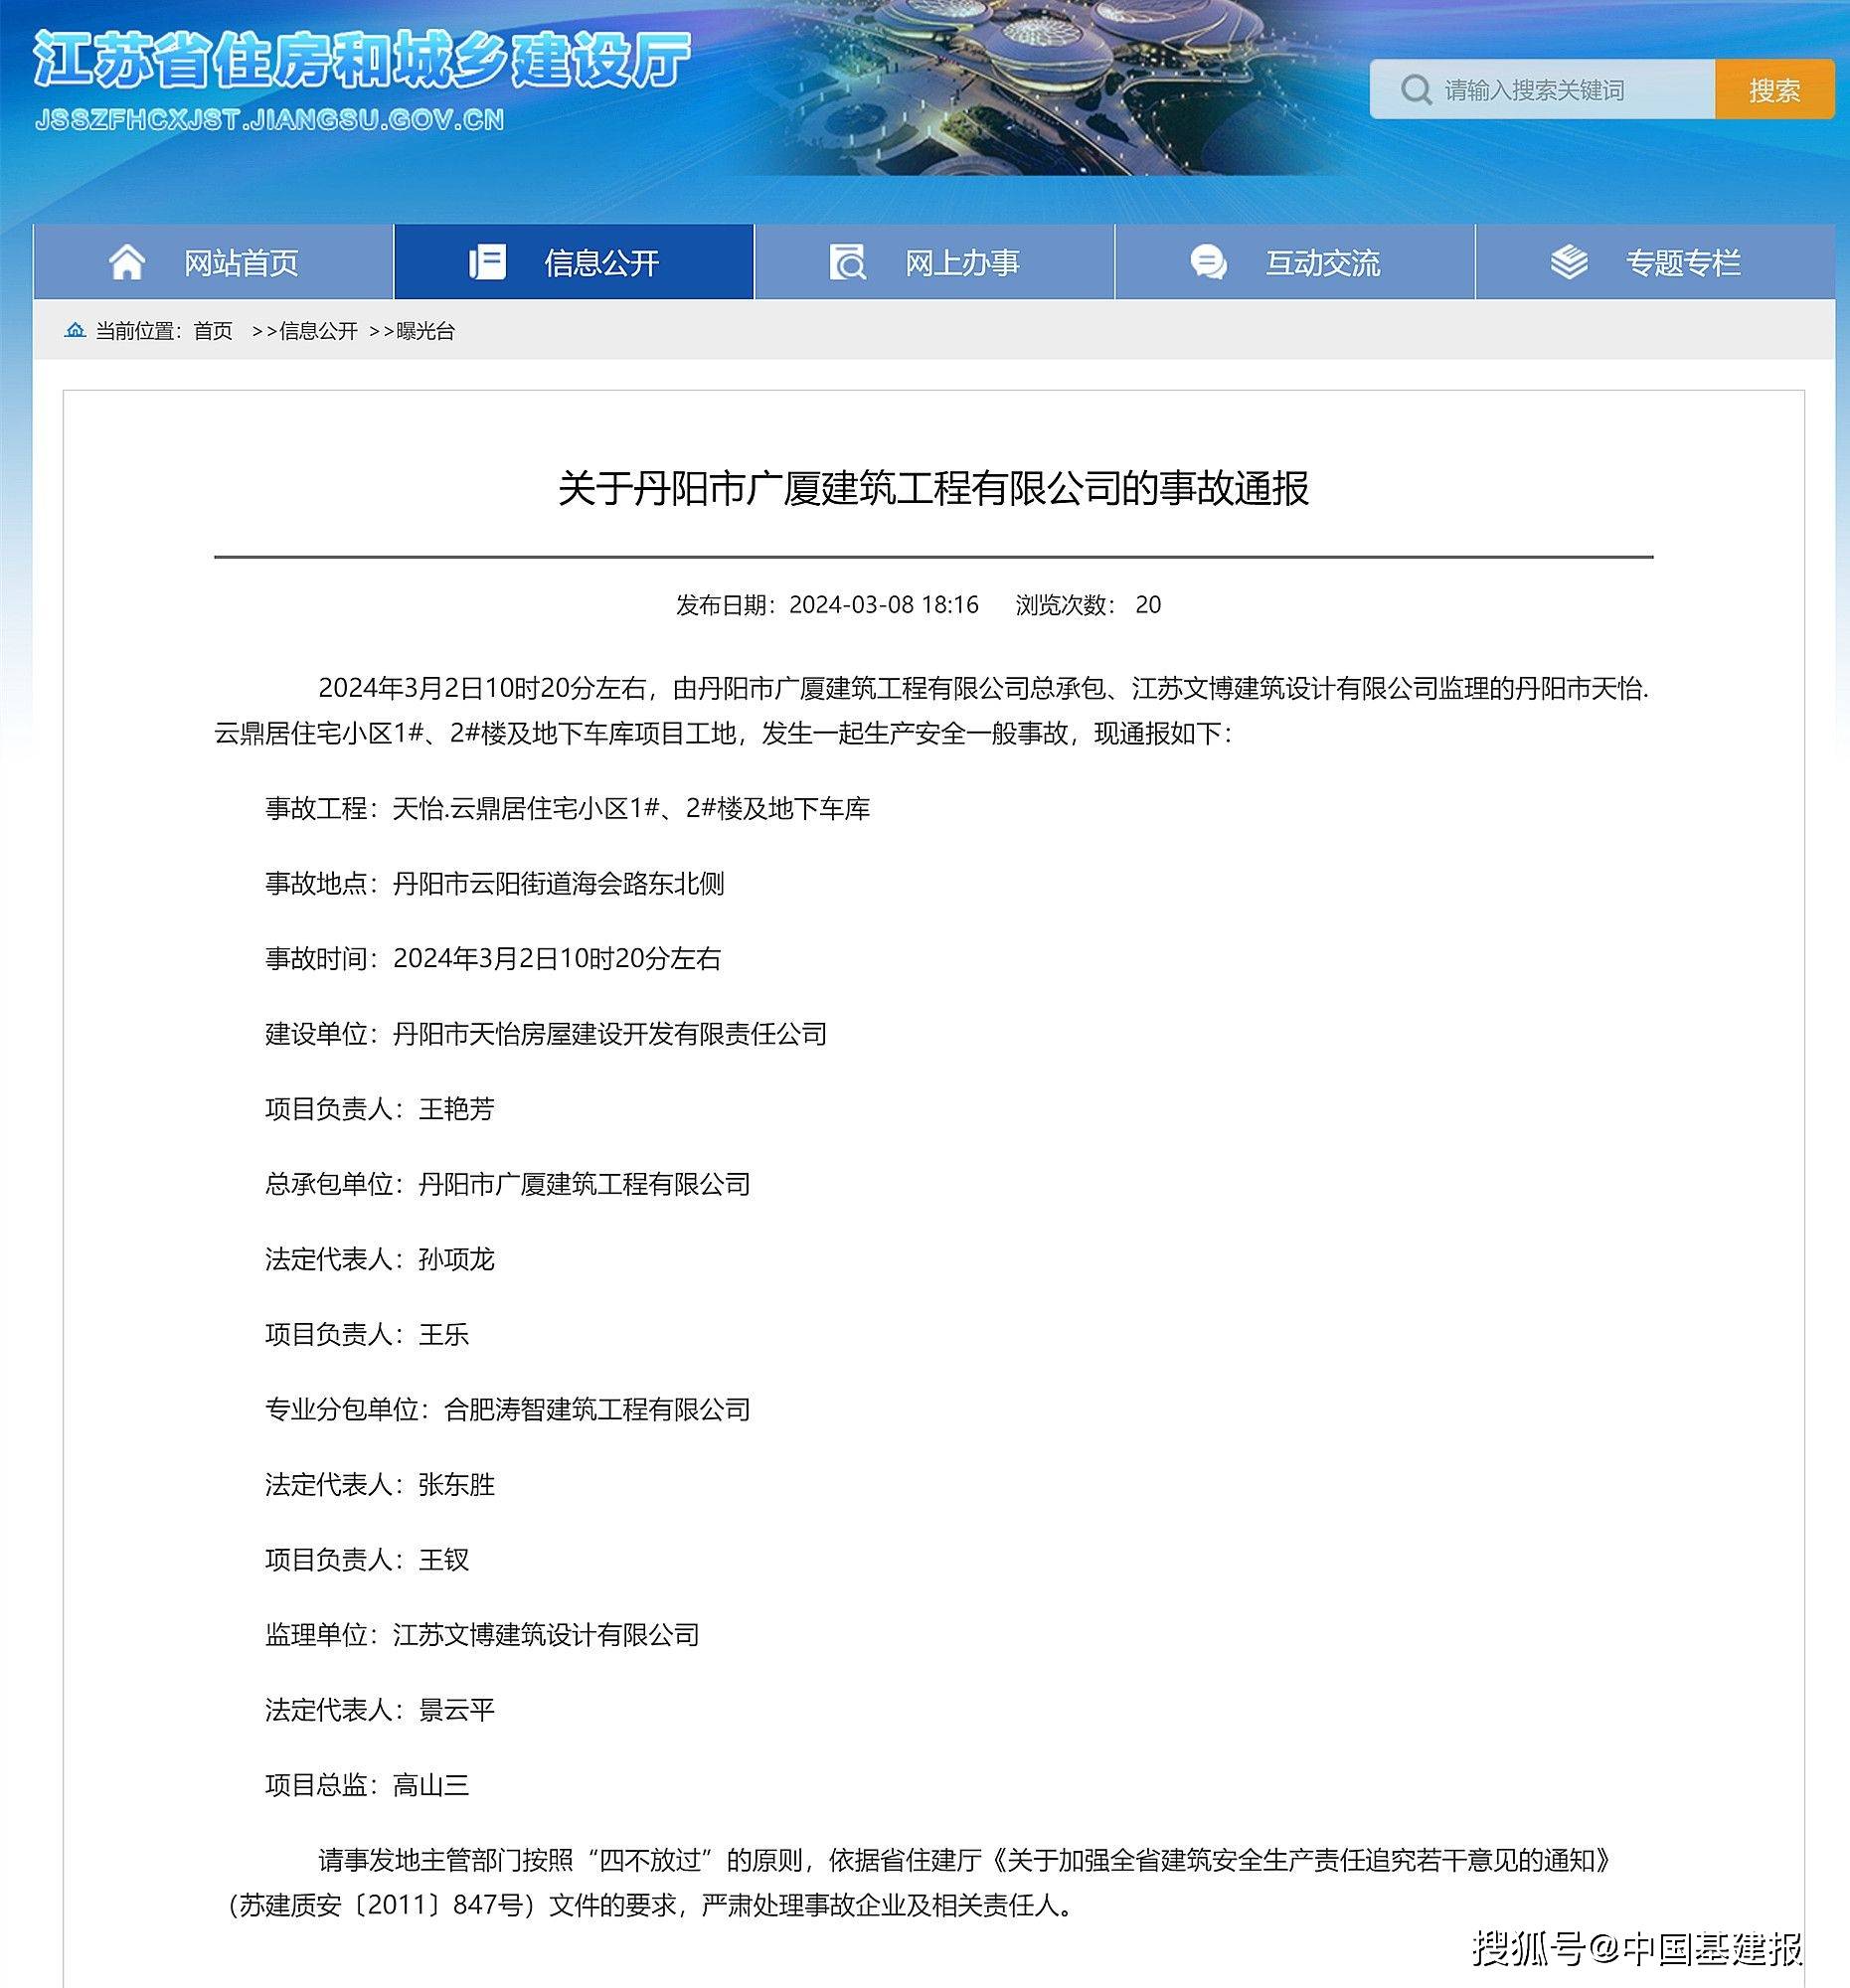 江苏省住建厅:关于丹阳市广厦建筑工程有限公司的事故通报